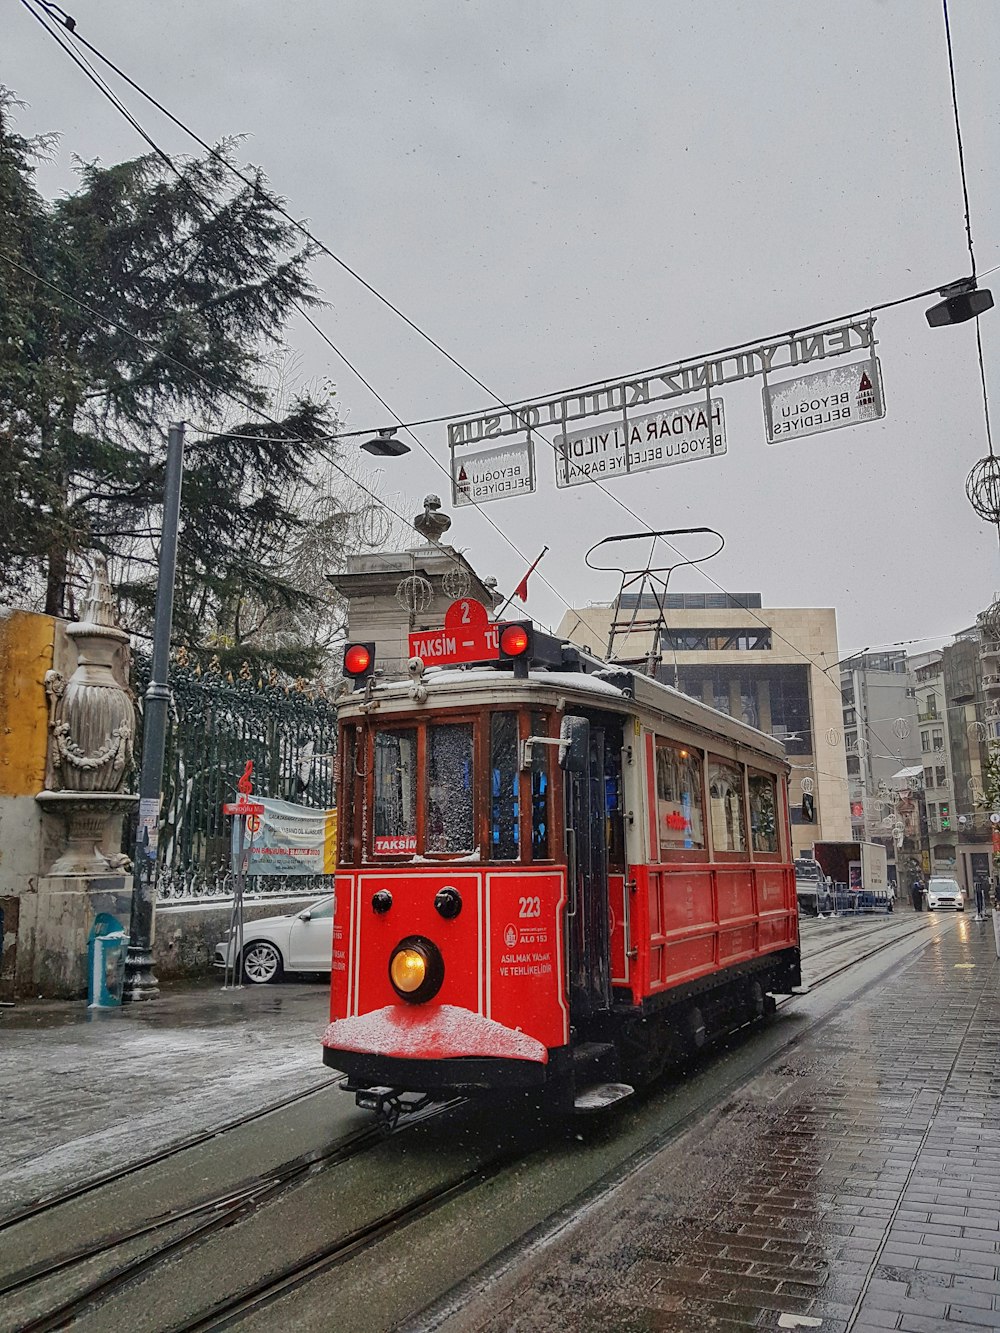 Rote Straßenbahn tagsüber auf der Straße in der Nähe von Gebäuden